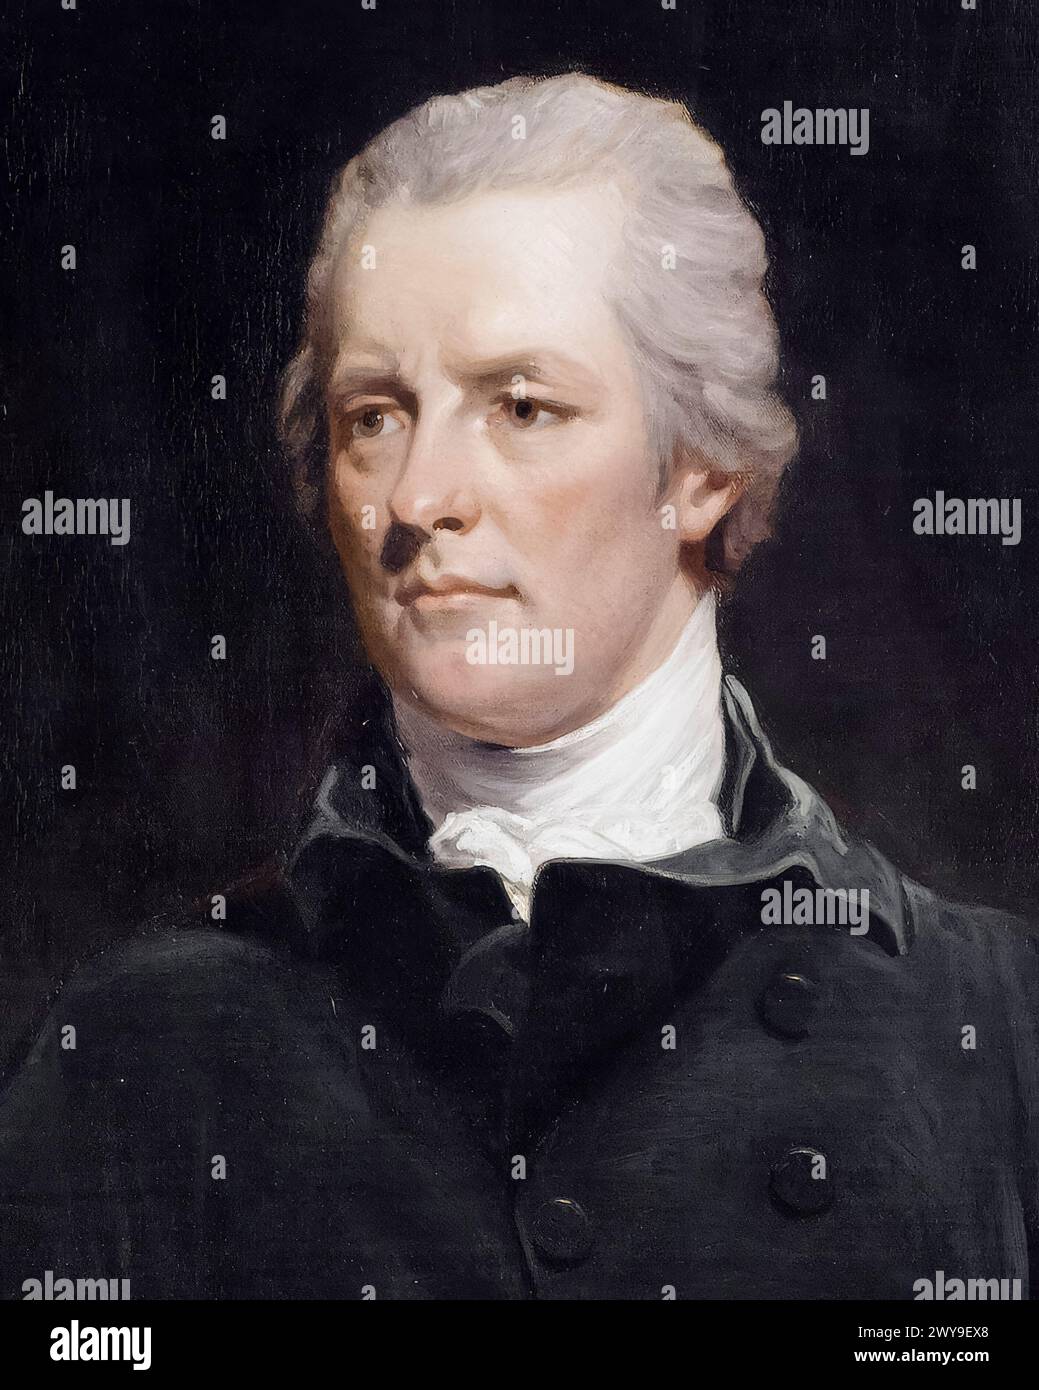 William Pitt le jeune (1759-1806), premier ministre de Grande-Bretagne 1783-1800, premier ministre du Royaume-Uni janvier-mars 1801 et 1804-1806, portrait peint à l'huile sur toile par John Hoppner, 1806-1810 Banque D'Images